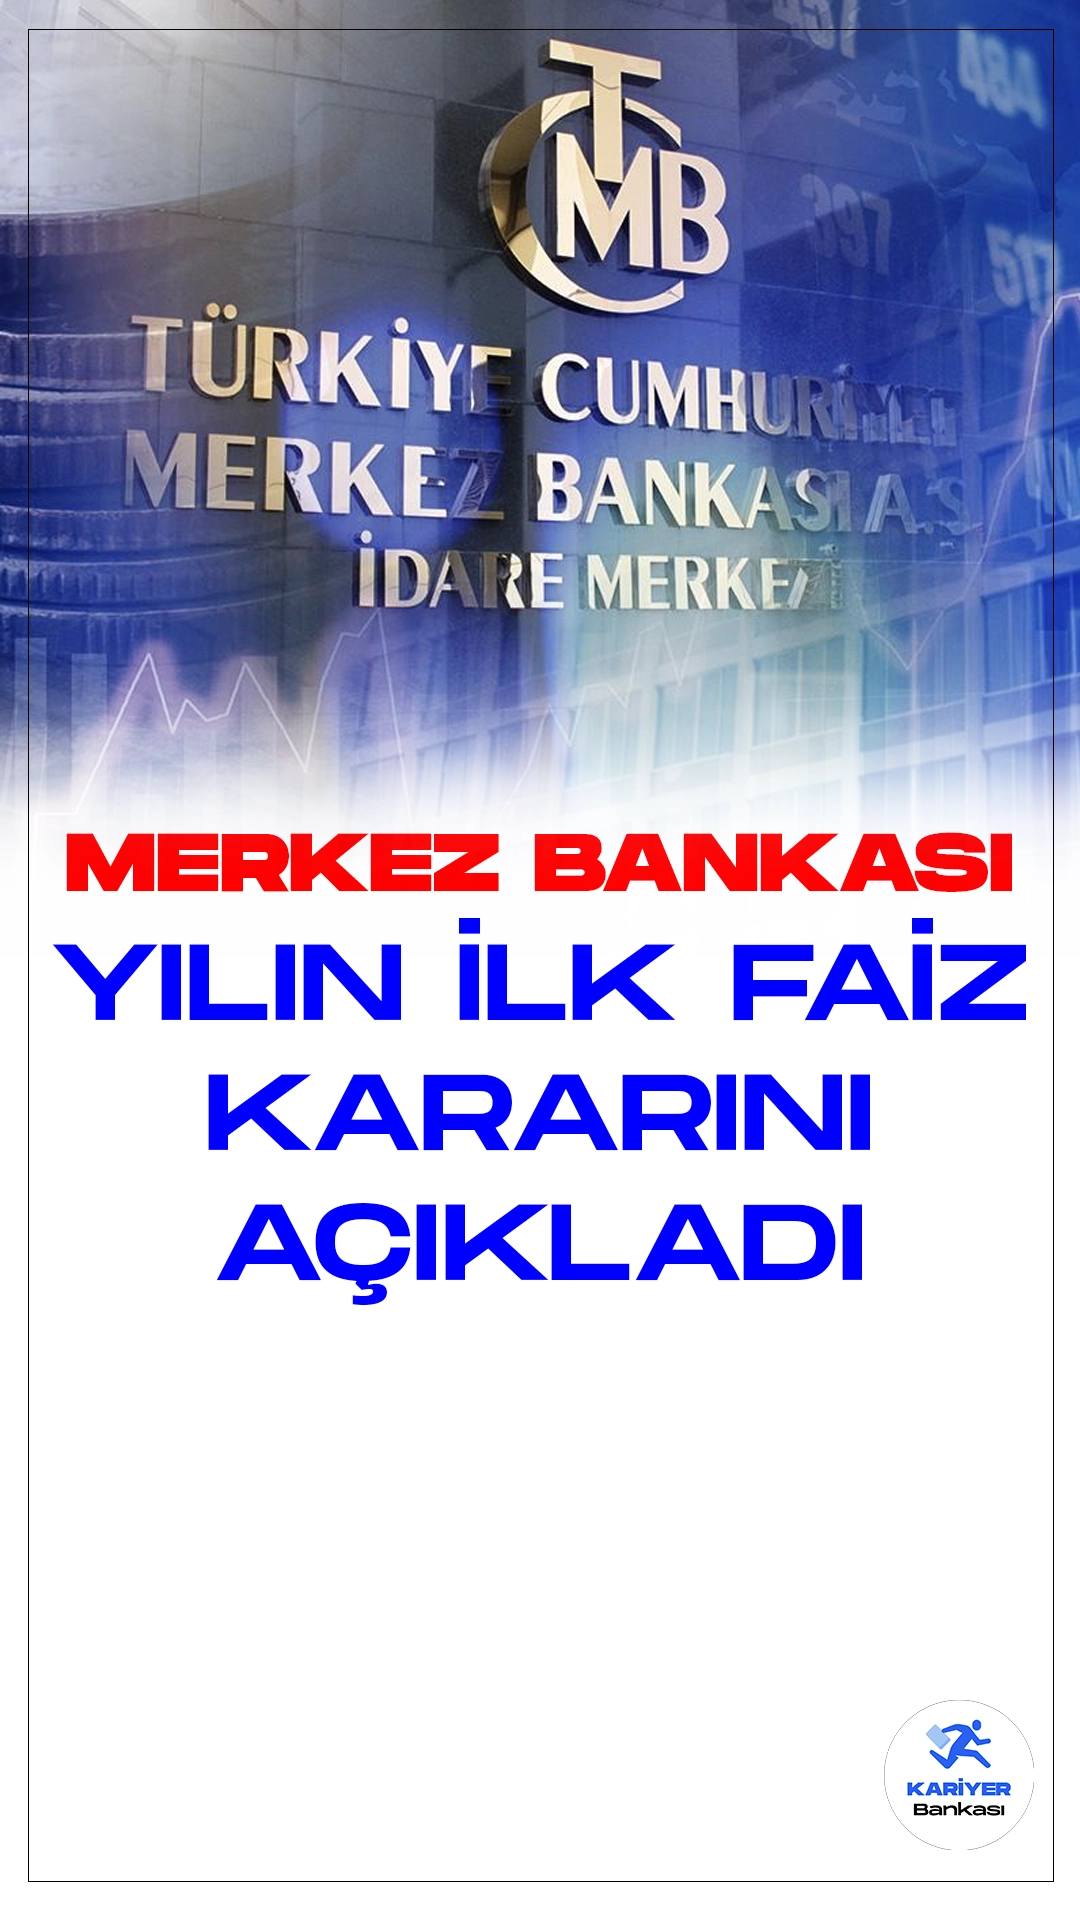 Merkez Bankası Yılın İlk Faiz Kararını Açıkladı.Türkiye Cumhuriyet Merkez Bankası (TCMB) Para Politikası Kurulu, son toplantısında politika faizi olan bir hafta vadeli repo ihale faiz oranını belirgin bir şekilde artırarak, %45 seviyesine yükseltti. Bu karar, ekonomik gelişmeleri etkileme potansiyeline sahip önemli bir adım olarak nitelendiriliyor.